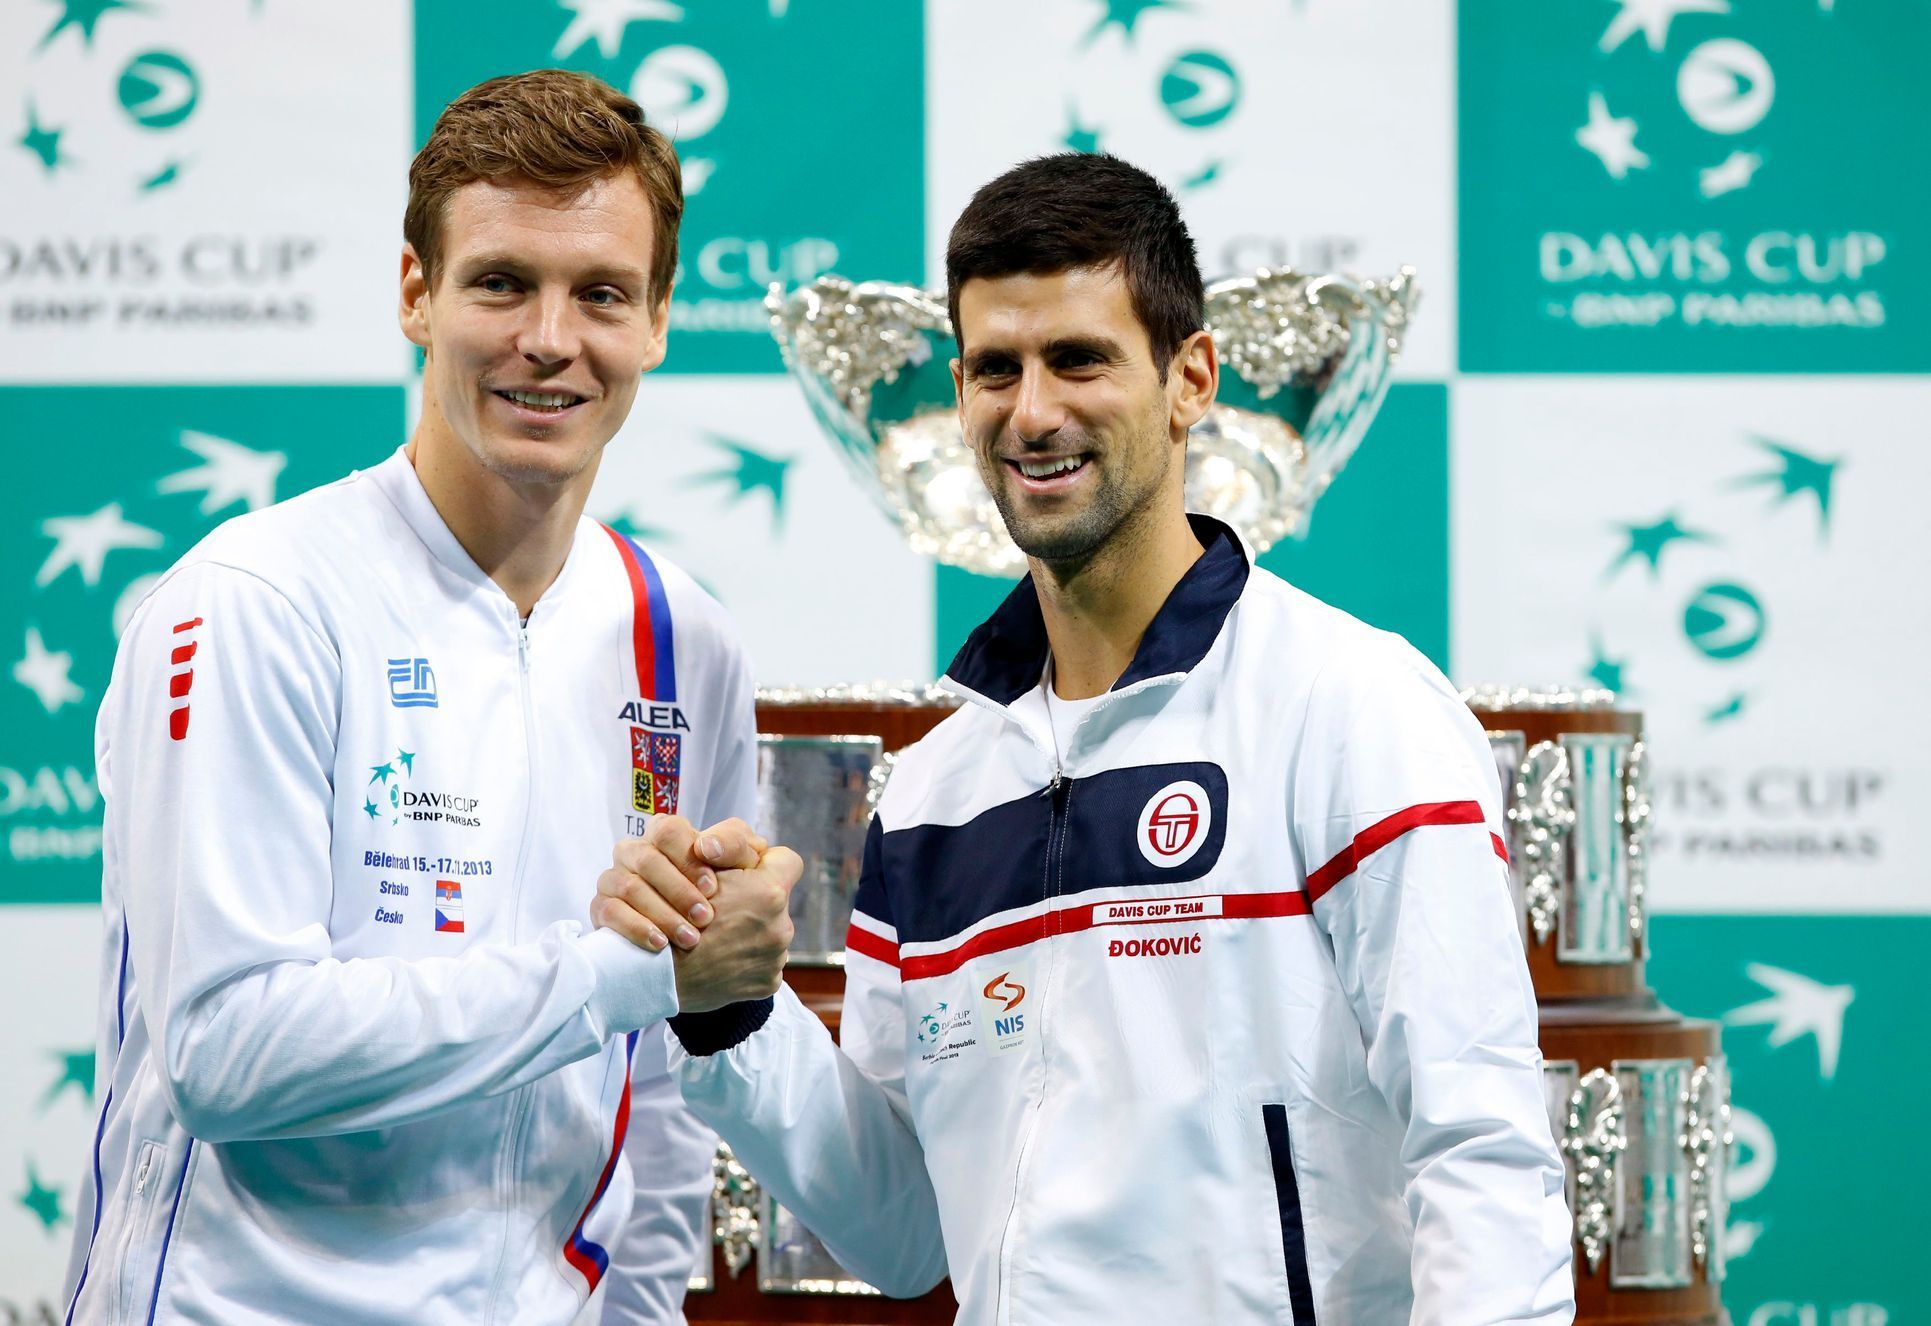 Finále Davis Cupu 2013 (Berdych, Djokovič)